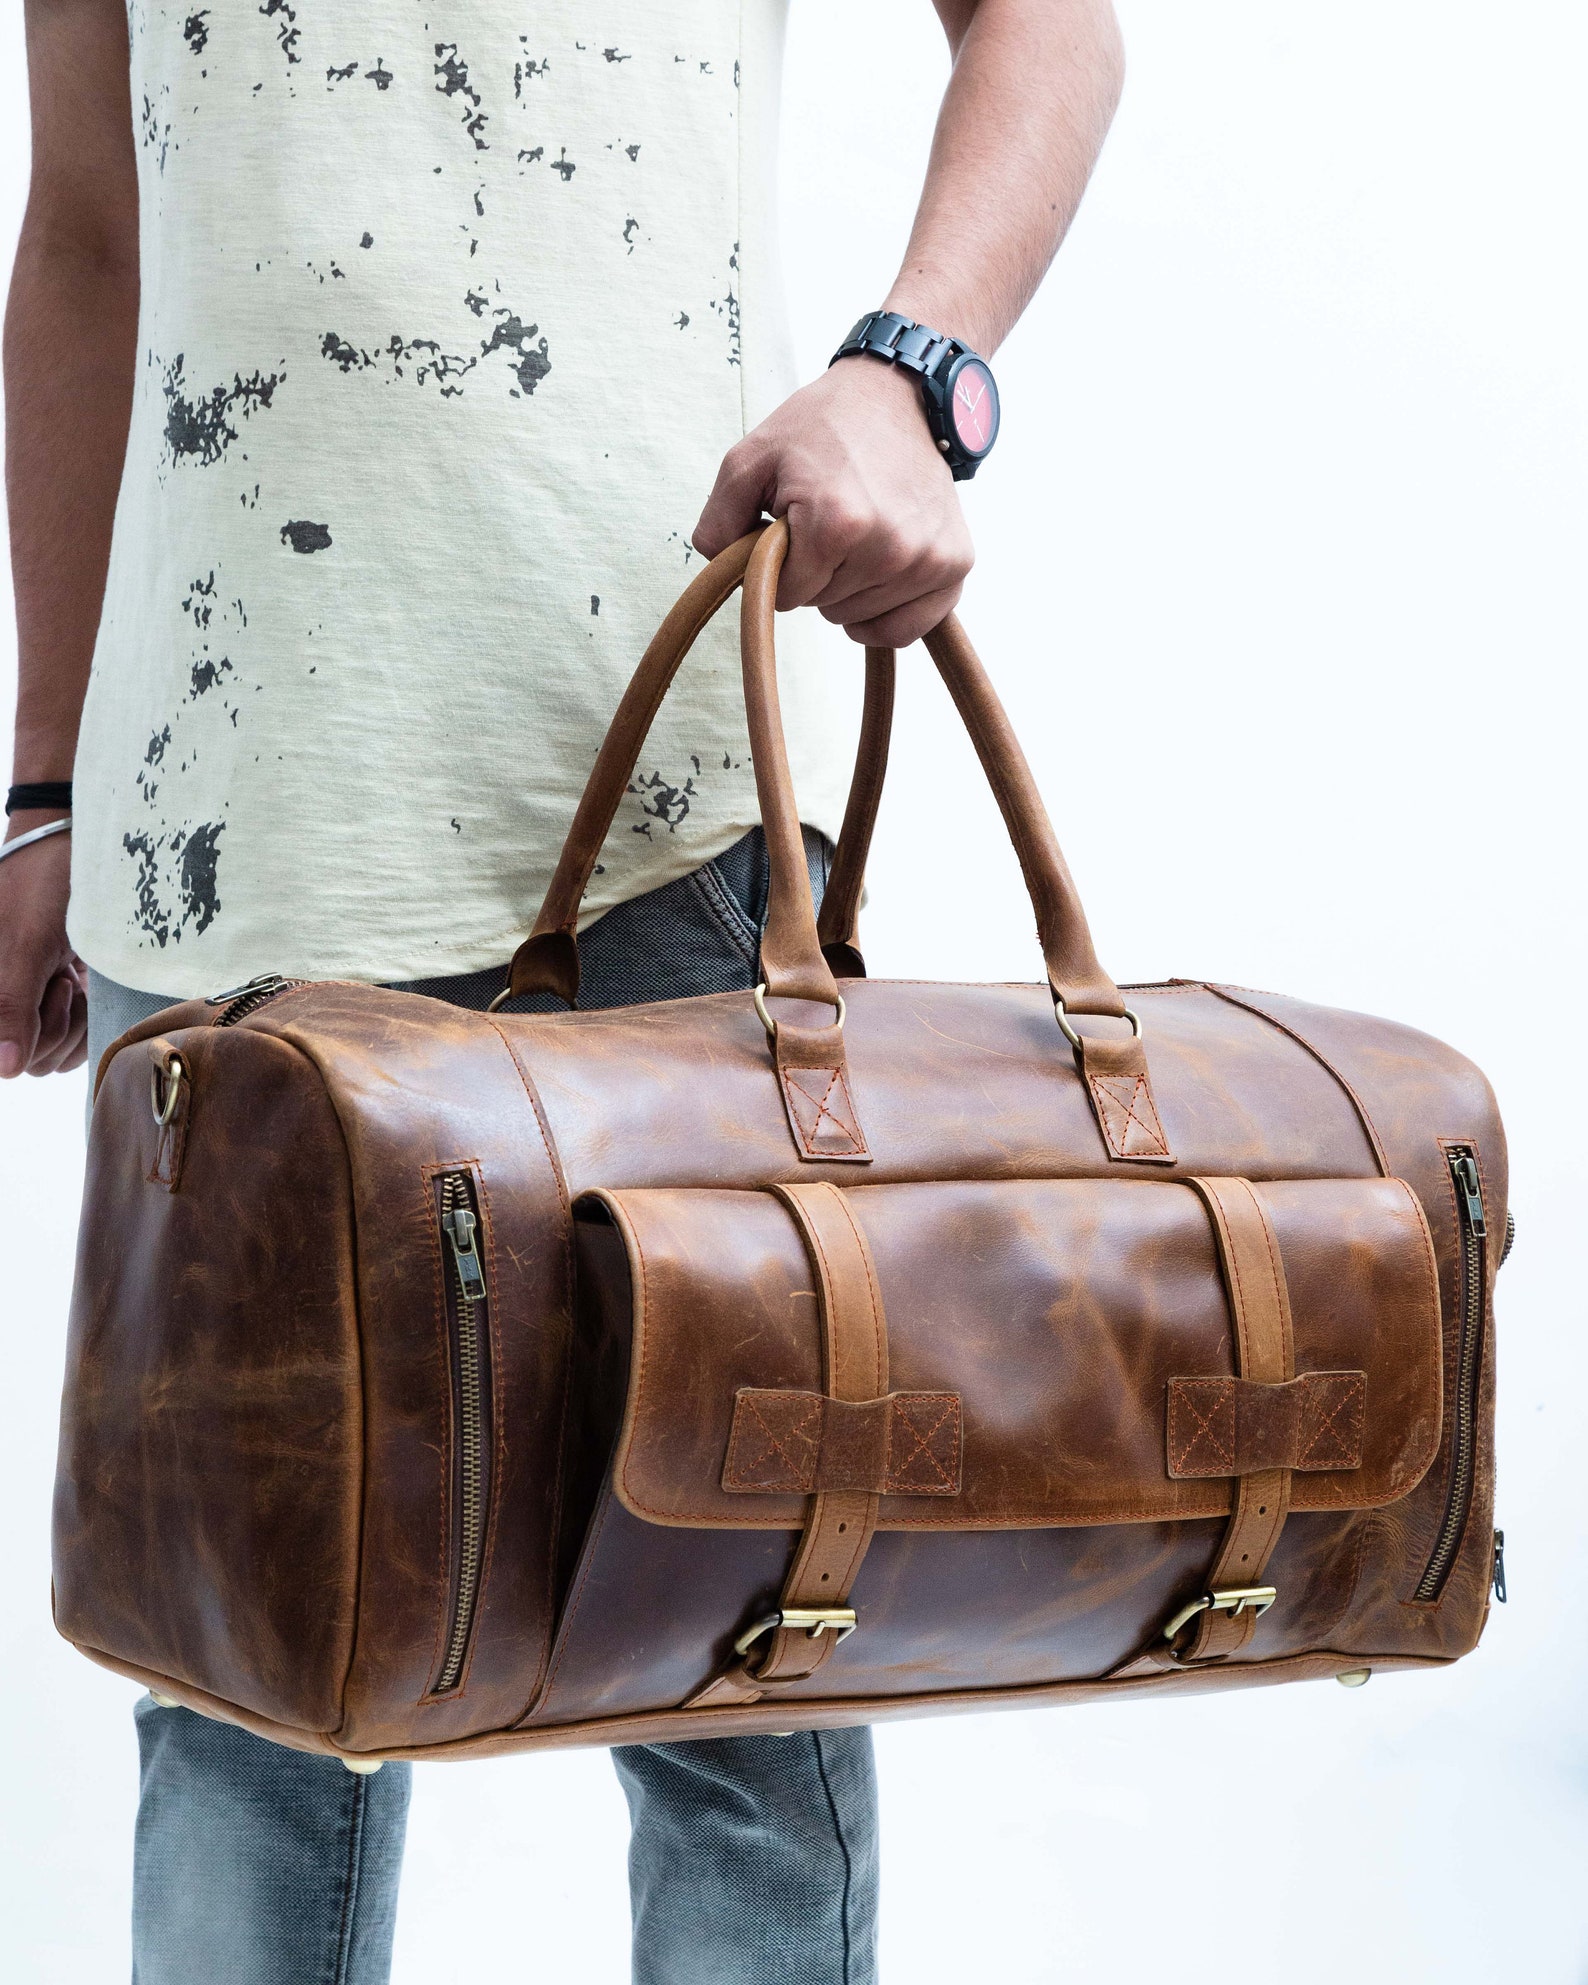 Genuine Full Grain Leather Duffel Bag Weekend Bag Luggage Bag | Etsy